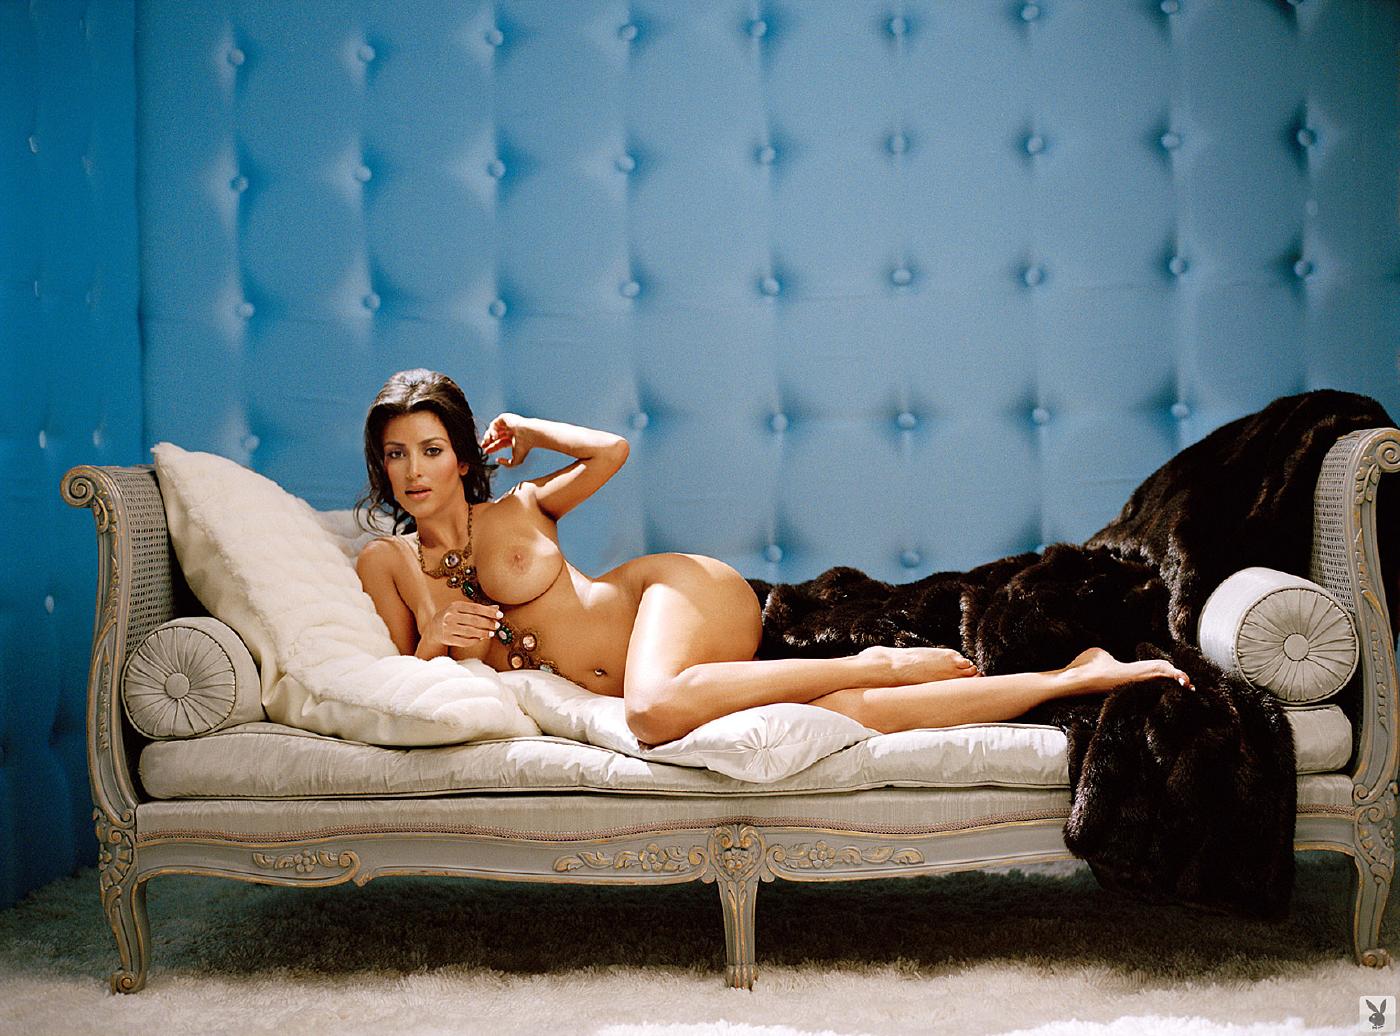 Kim Kardashian Nude Playboy Playmodels Photoshoot Leaked 16